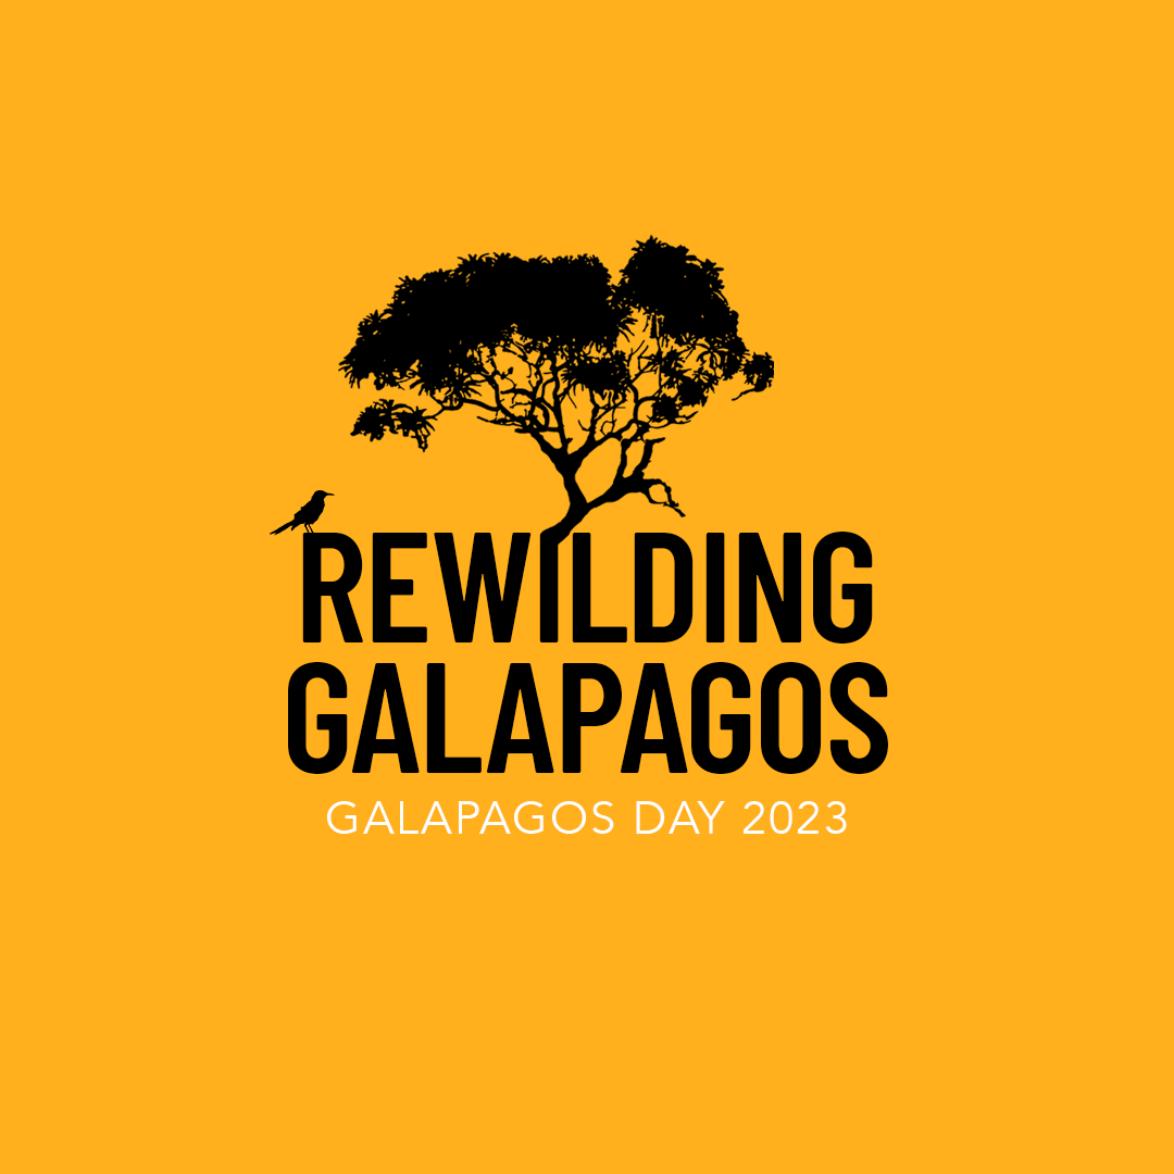 Galapagos Day 2023: Rewilding Galapagos